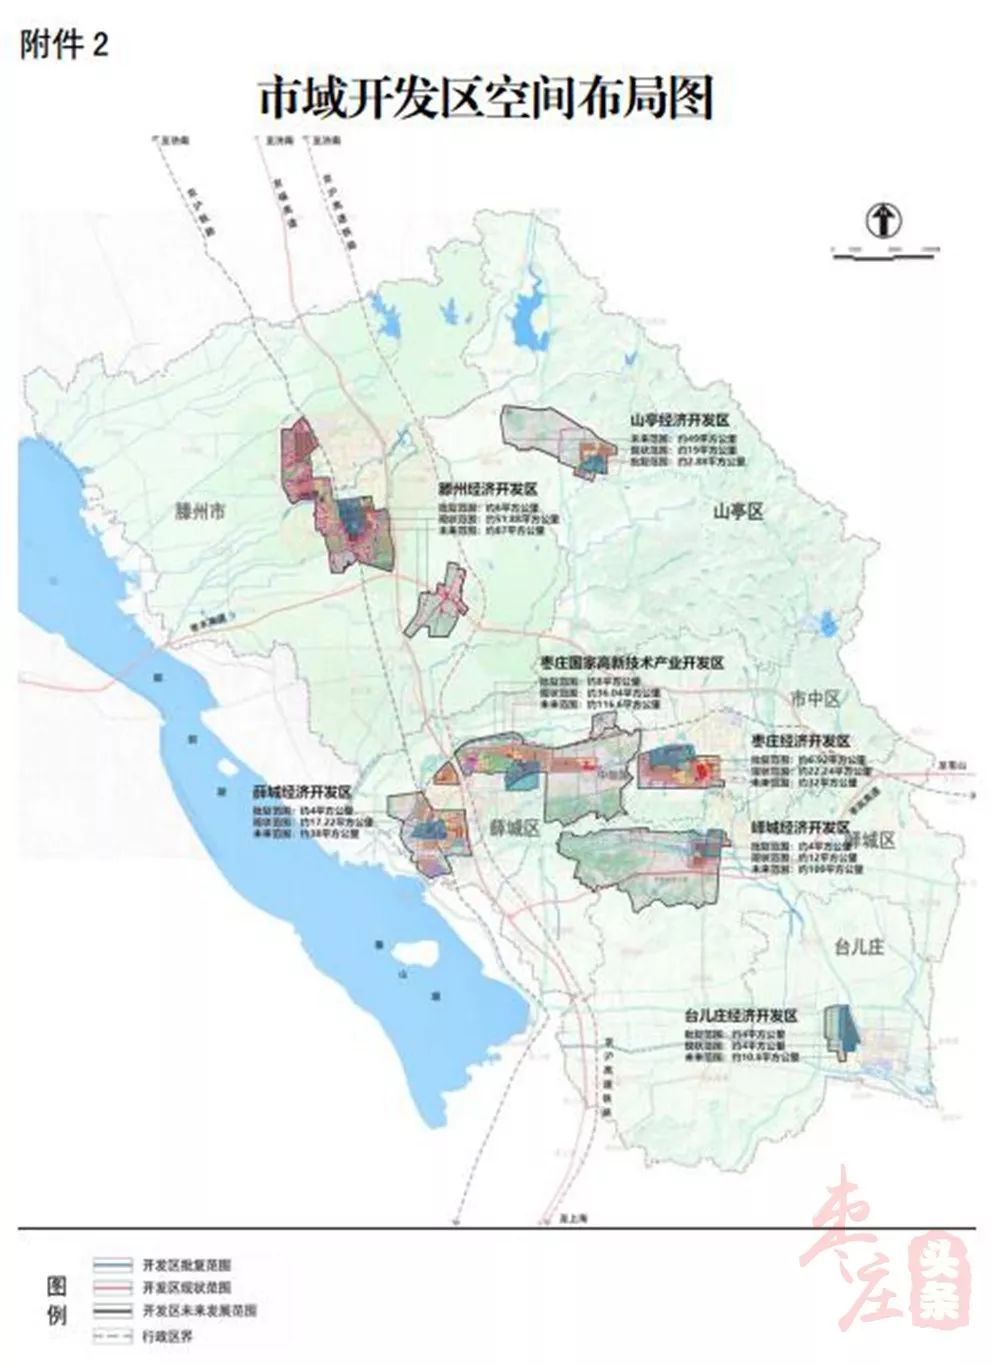 枣庄大规划台来看看各区市的定位